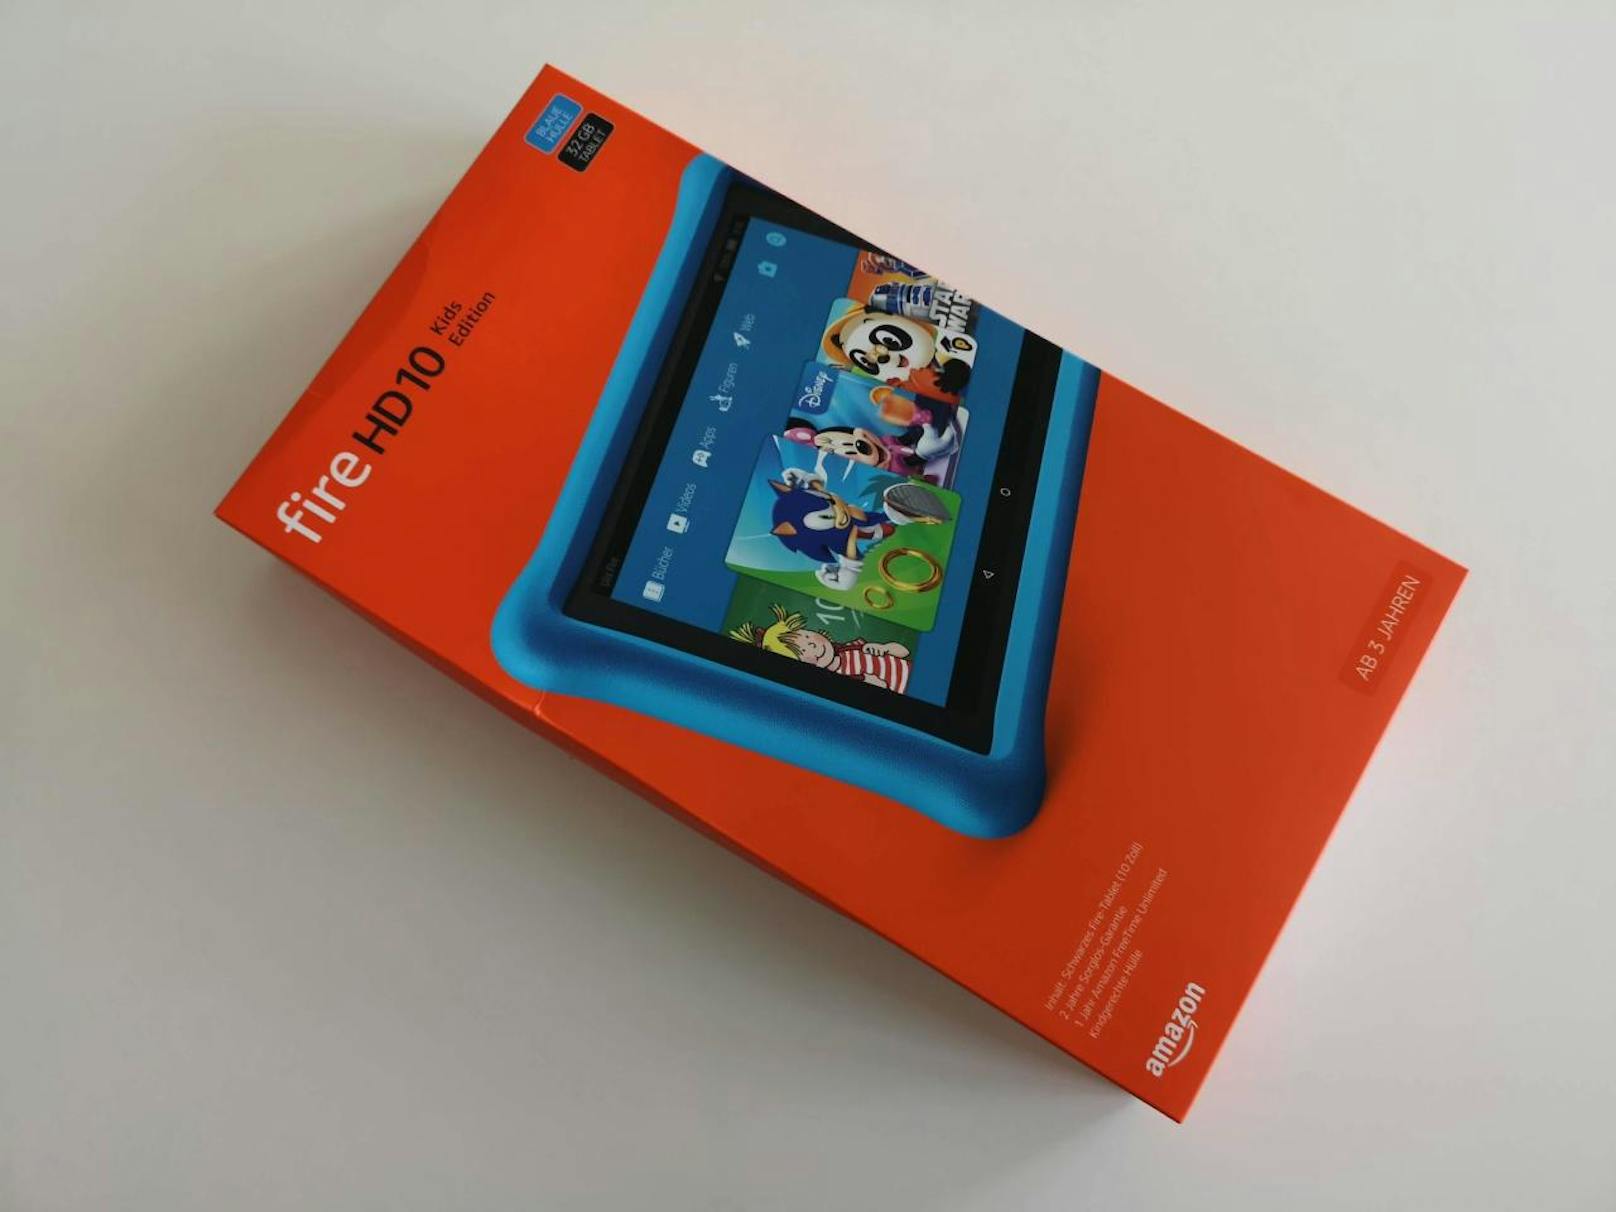 Beim Fire HD 10 Kids Edition handelt es sich um das ganz normale Fire HD 10 Tablet mit kindgerechten Ergänzungen.